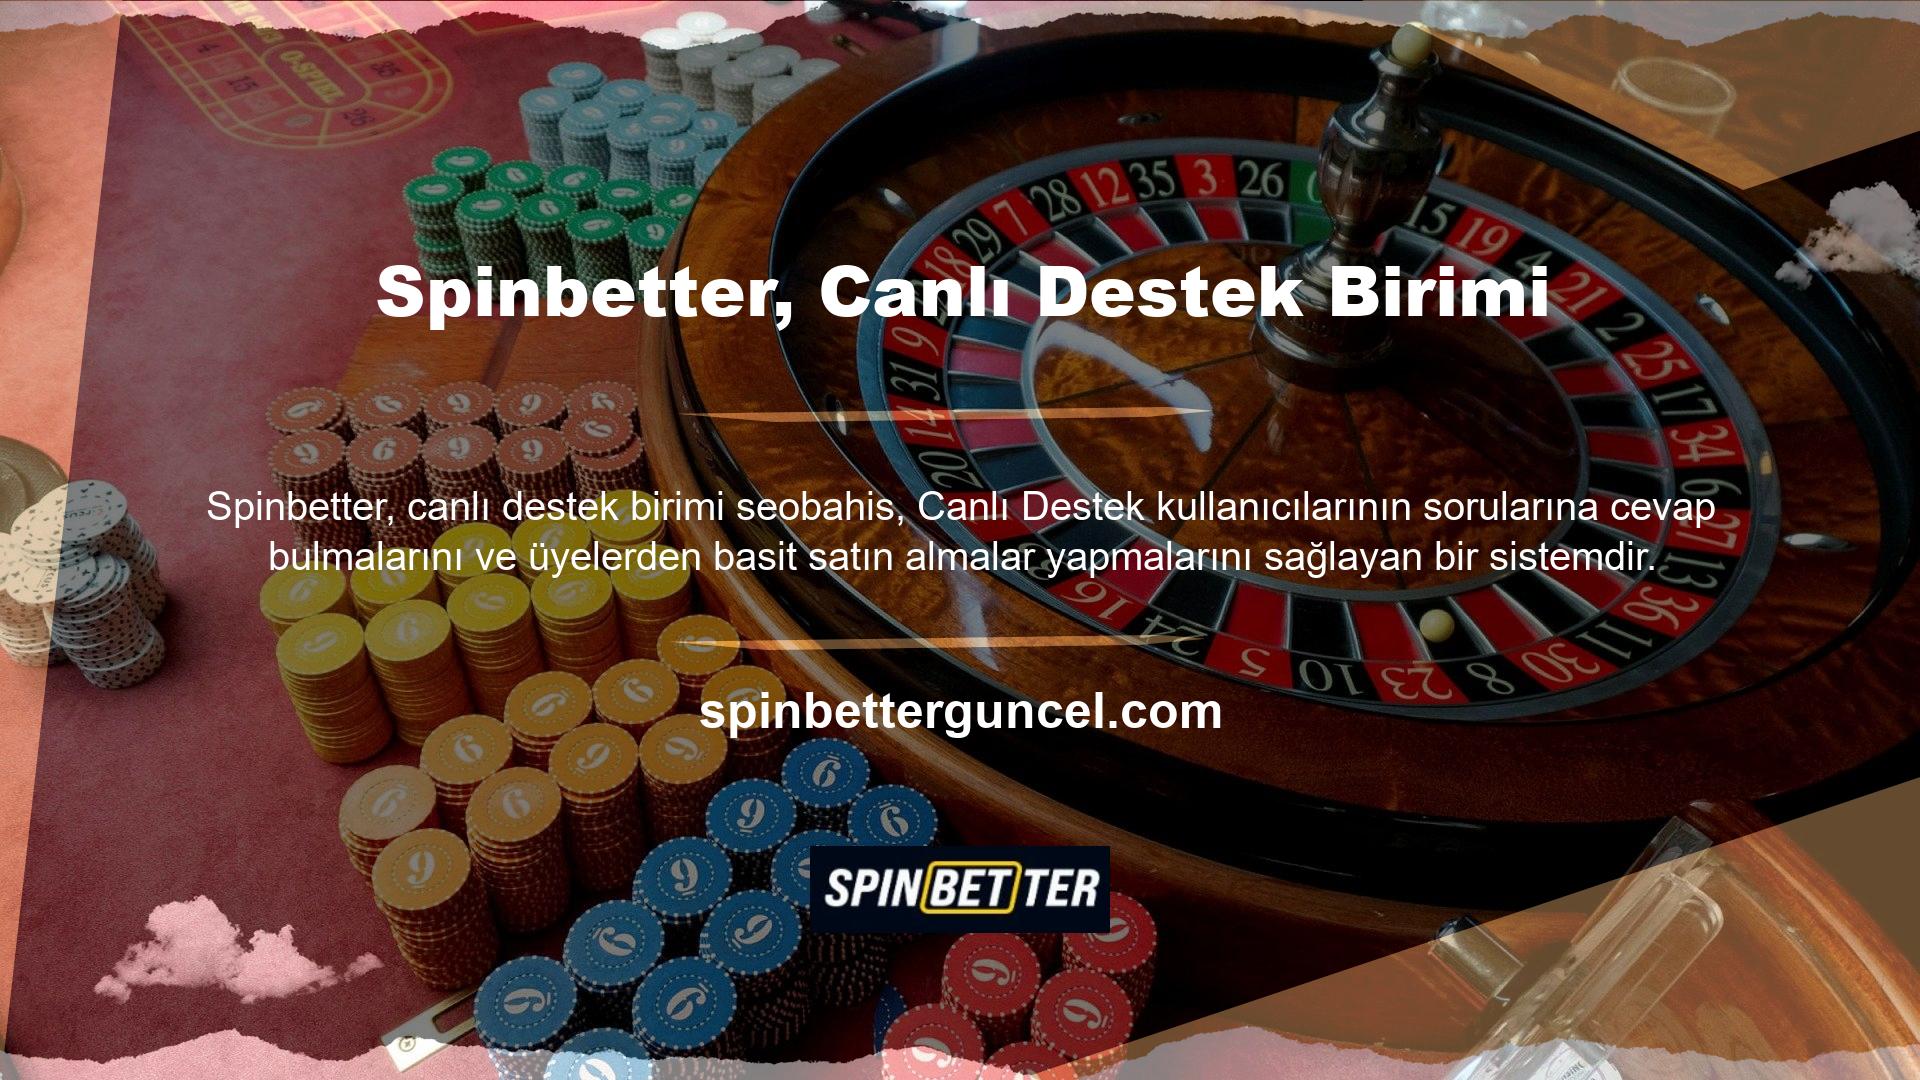 Spinbetter Bahis Sitesi, canlı bahis ve canlı casino alanında bahis tutkunlarına yönelik uluslararası bir bahis platformudur